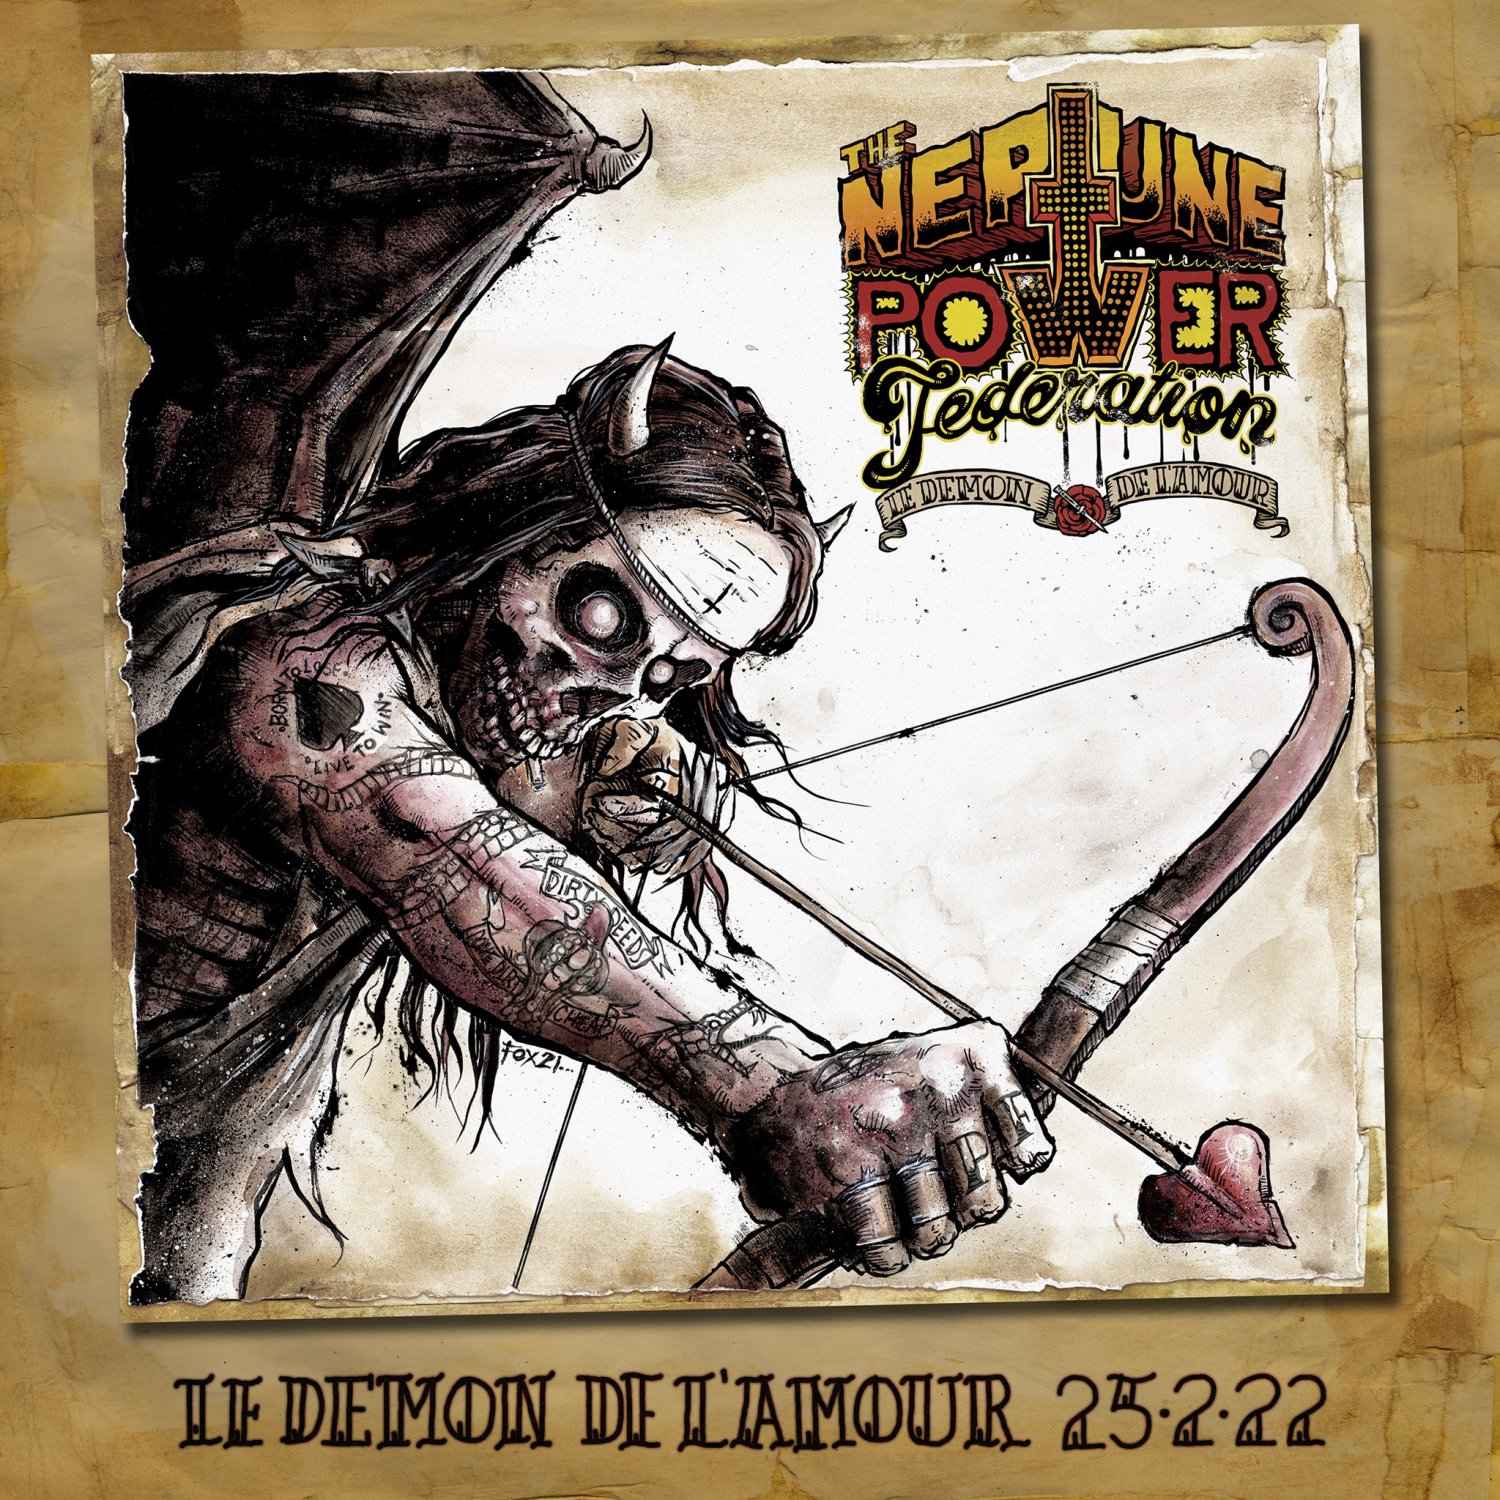 The Neptune Power Federation - Le Demon De L'Amour